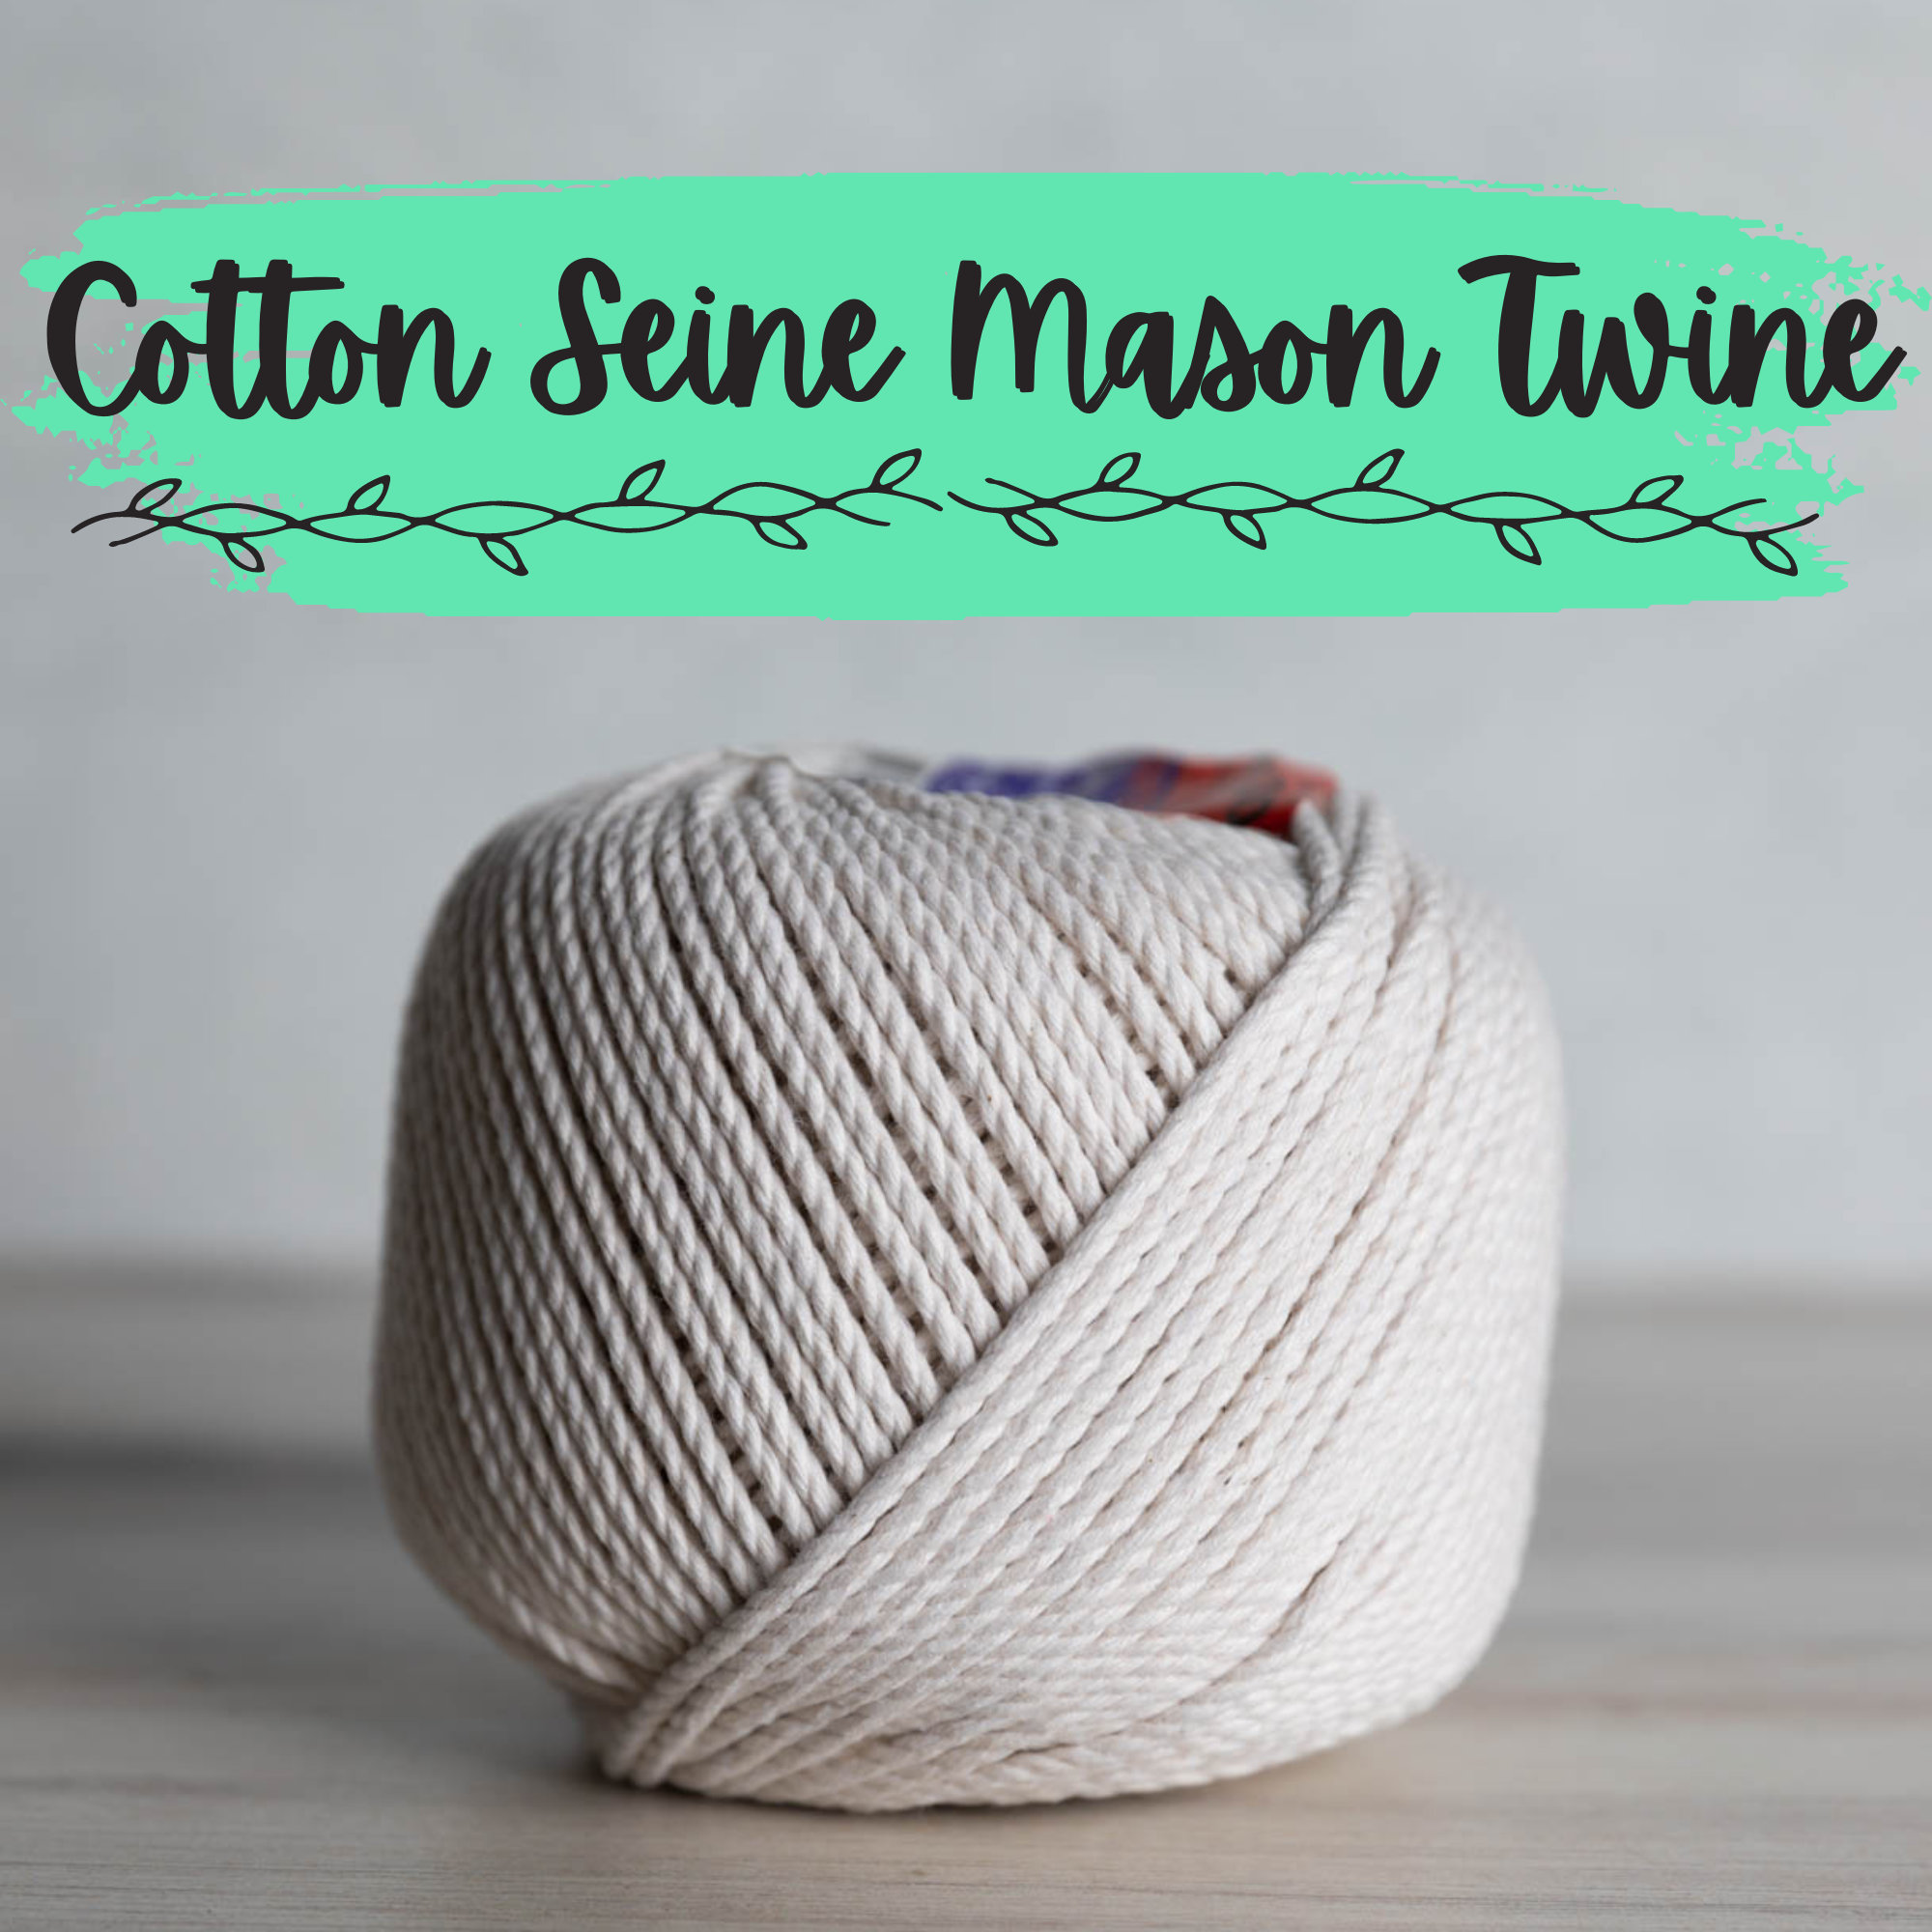 100% All Natural Cotton Seine Mason Twine Cotton Cord and Macramé